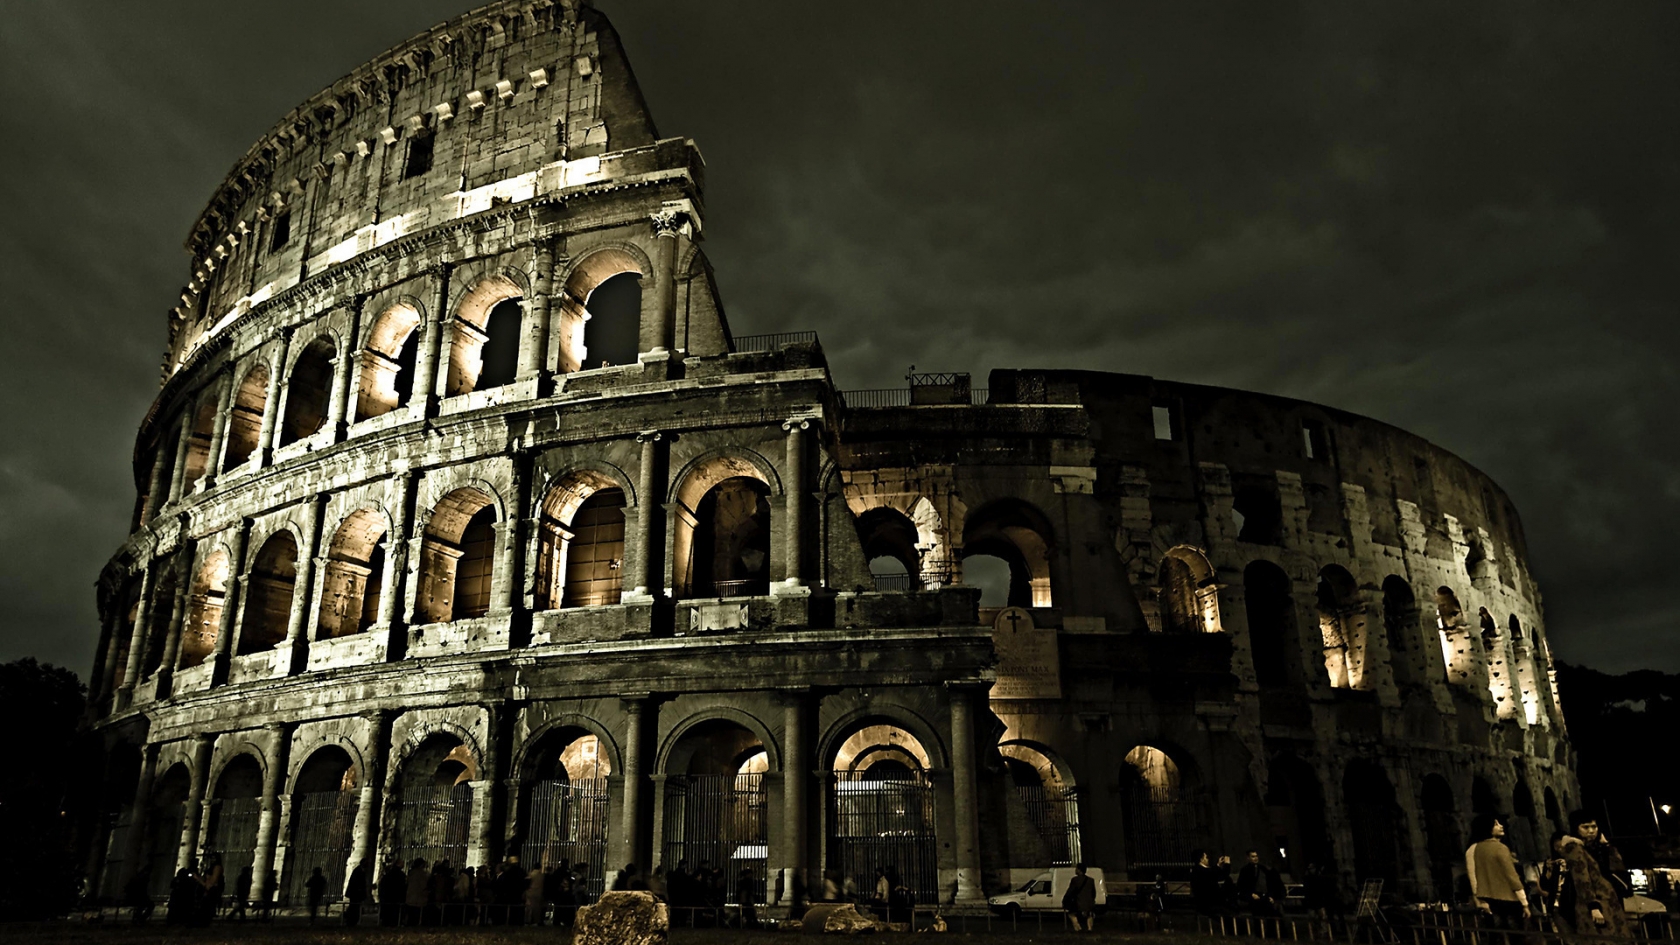 Dark Rome Coliseum for 1680 x 945 HDTV resolution